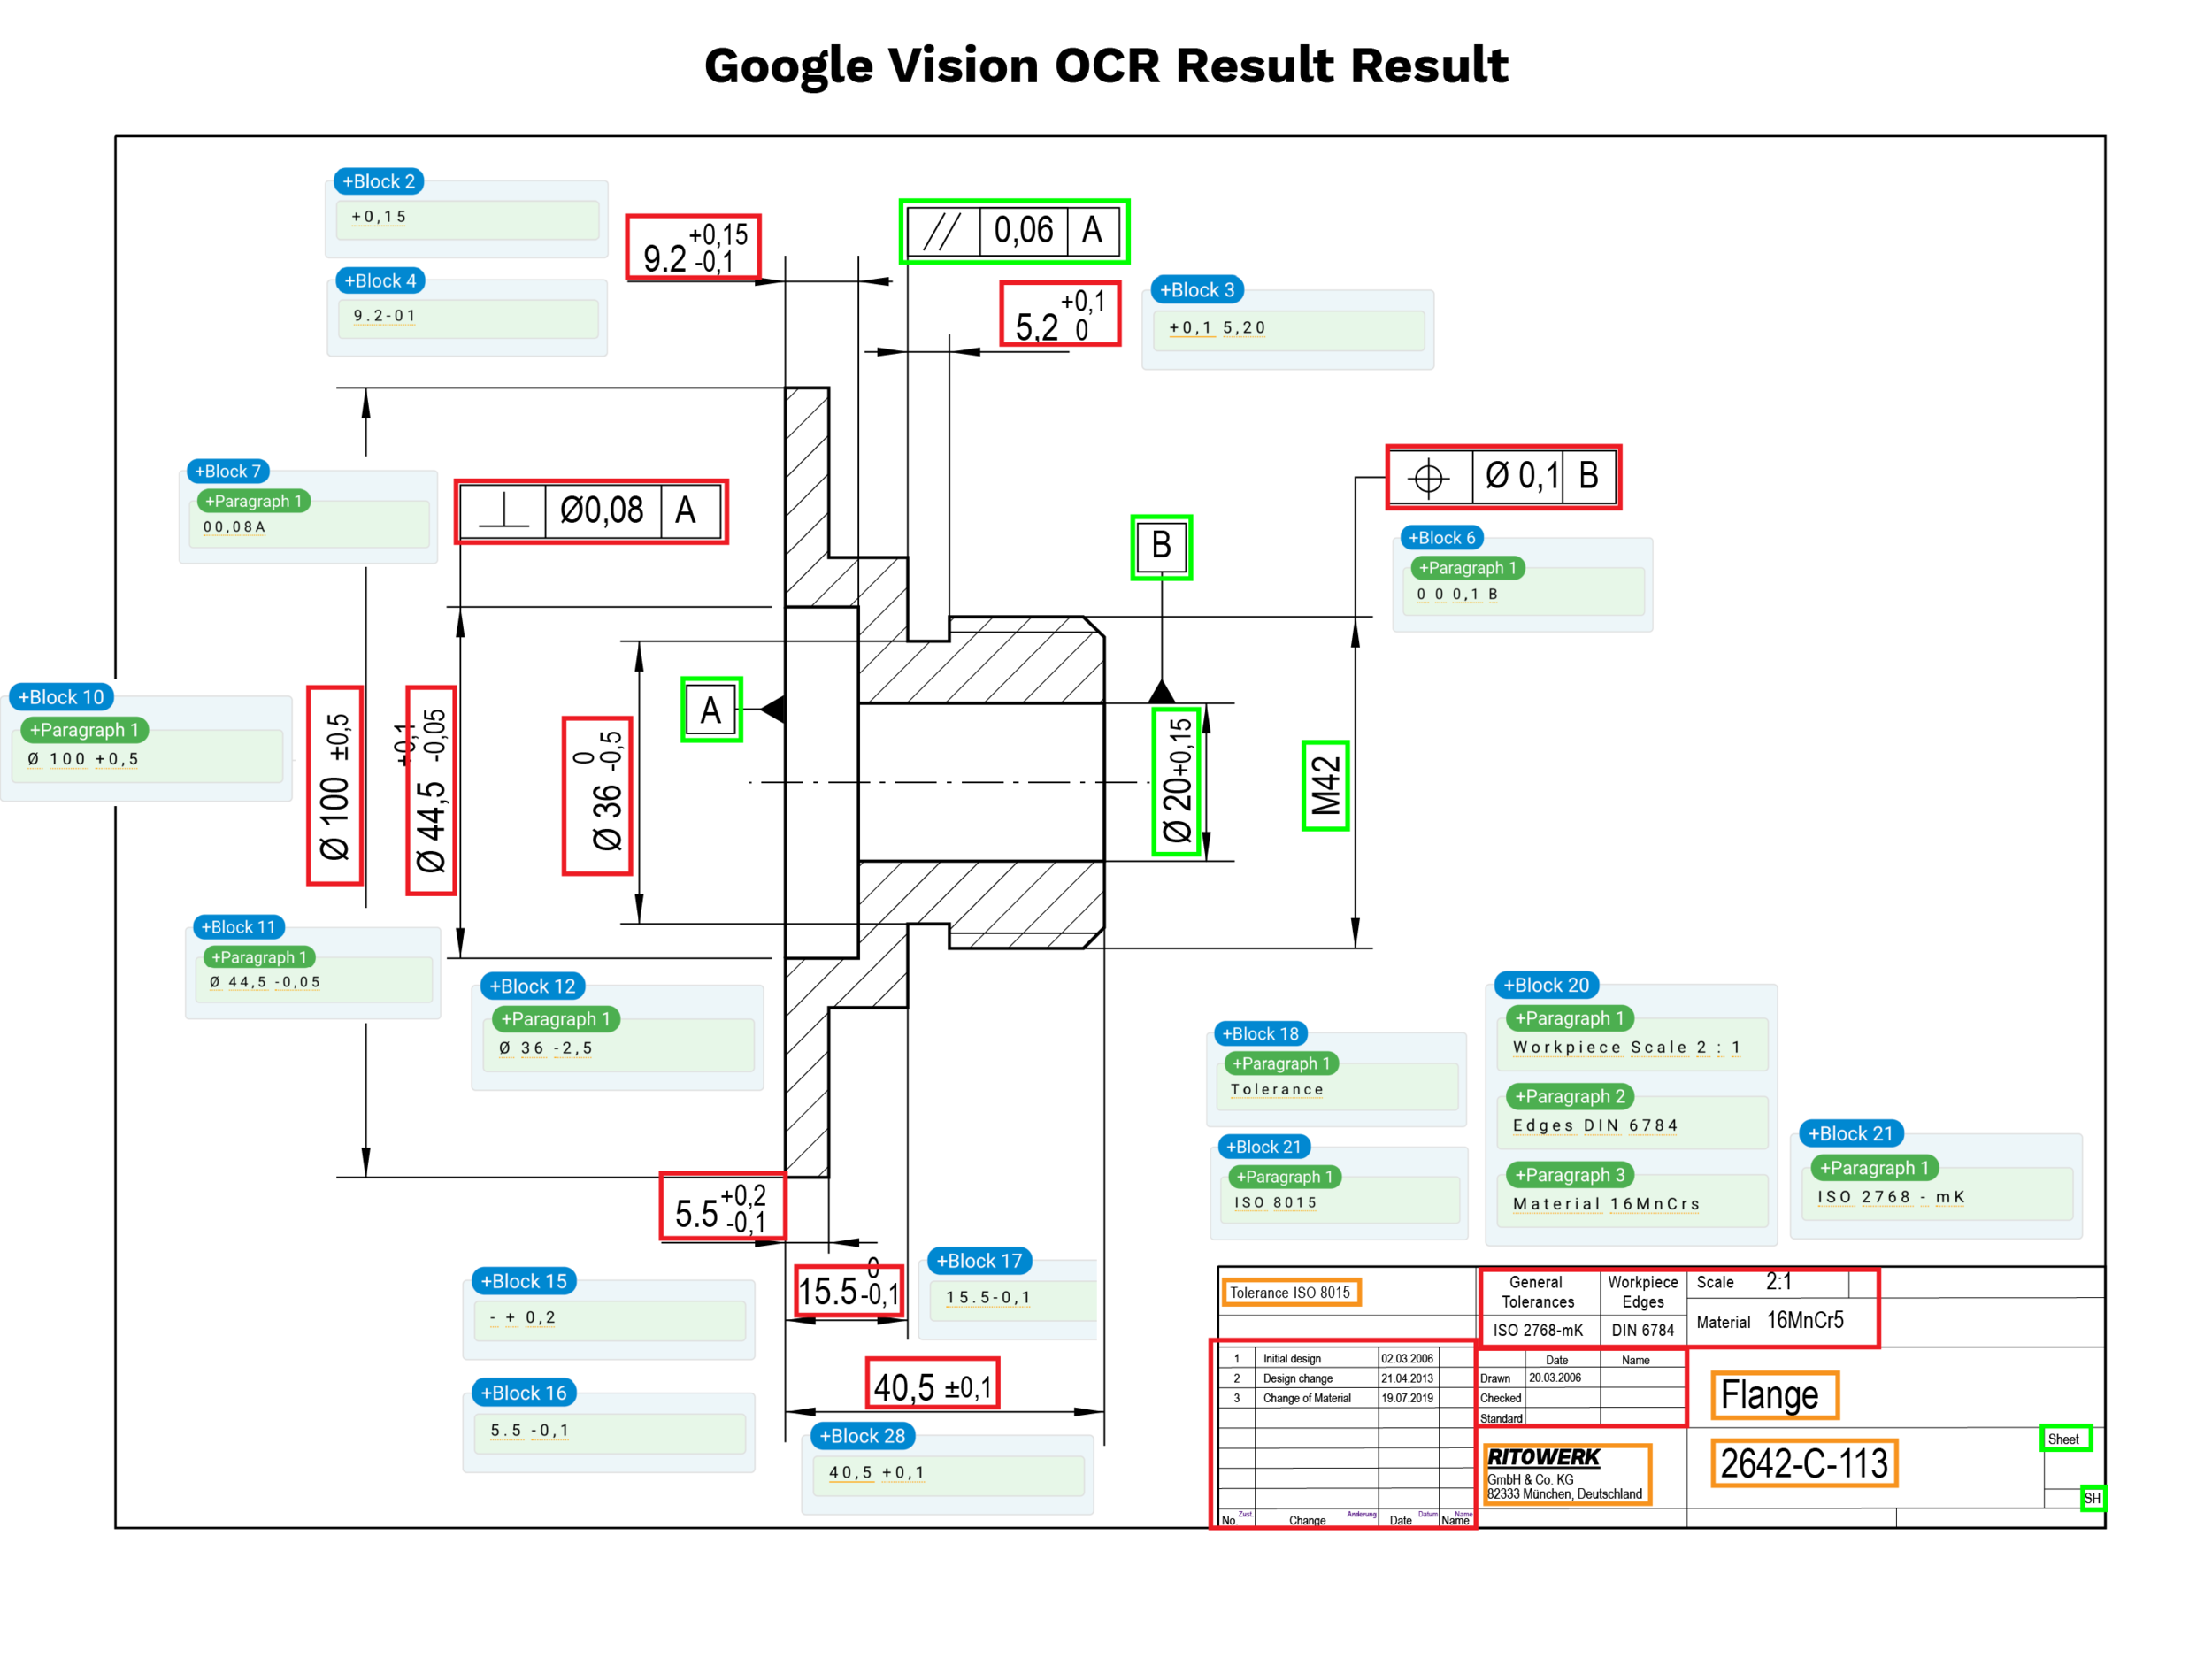 Entender el dibujo técnico es un reto con el resultado del OCR de Google Vision